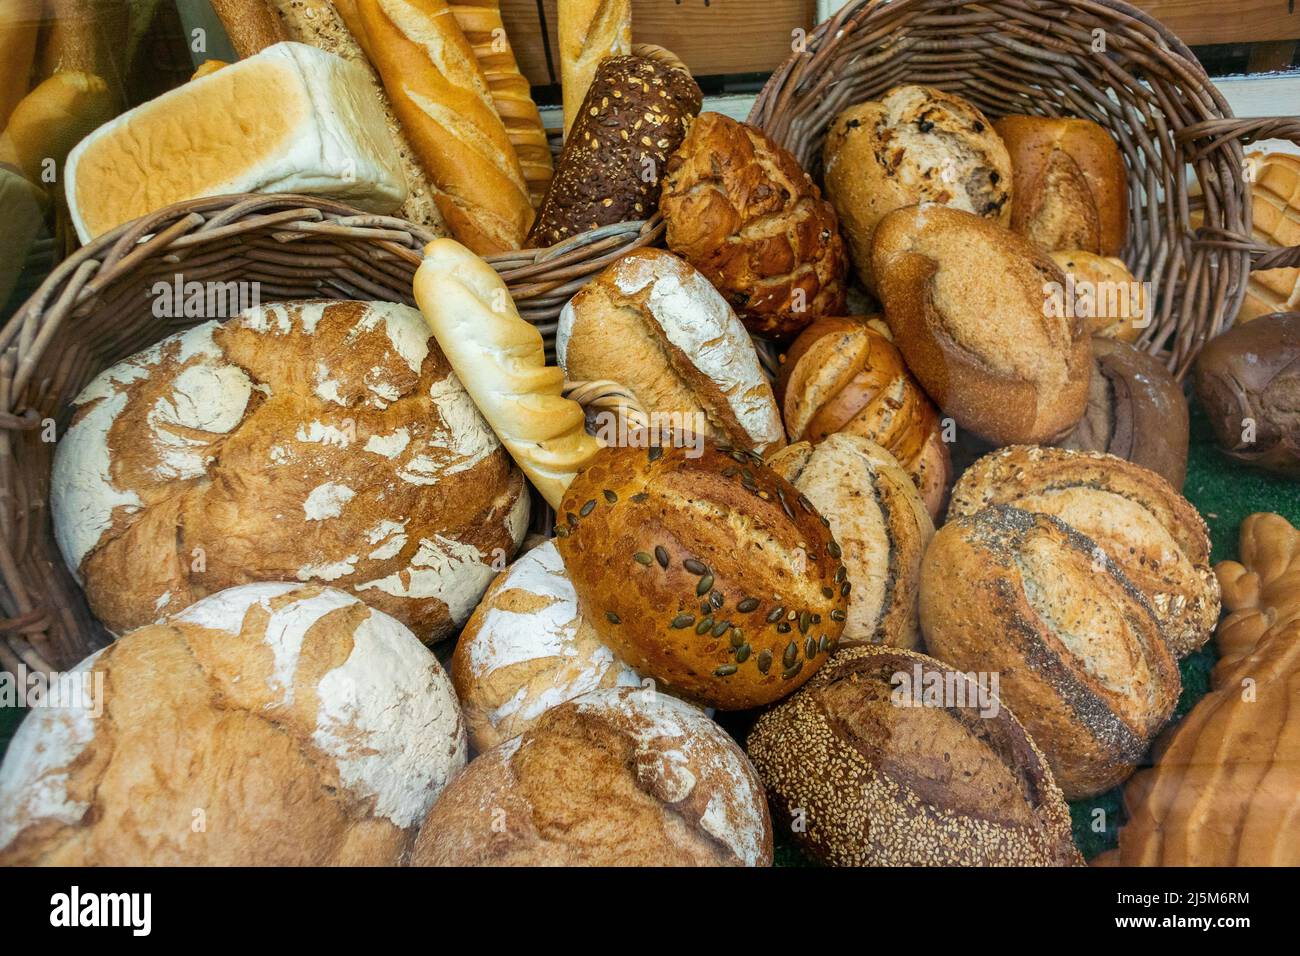 Barcelone, Espagne, détail, pain sur présentation, dans la vieille boulangerie espagnole pâtisserie magasin, 'Forn de Pa' approvisionnement durable de nourriture Banque D'Images